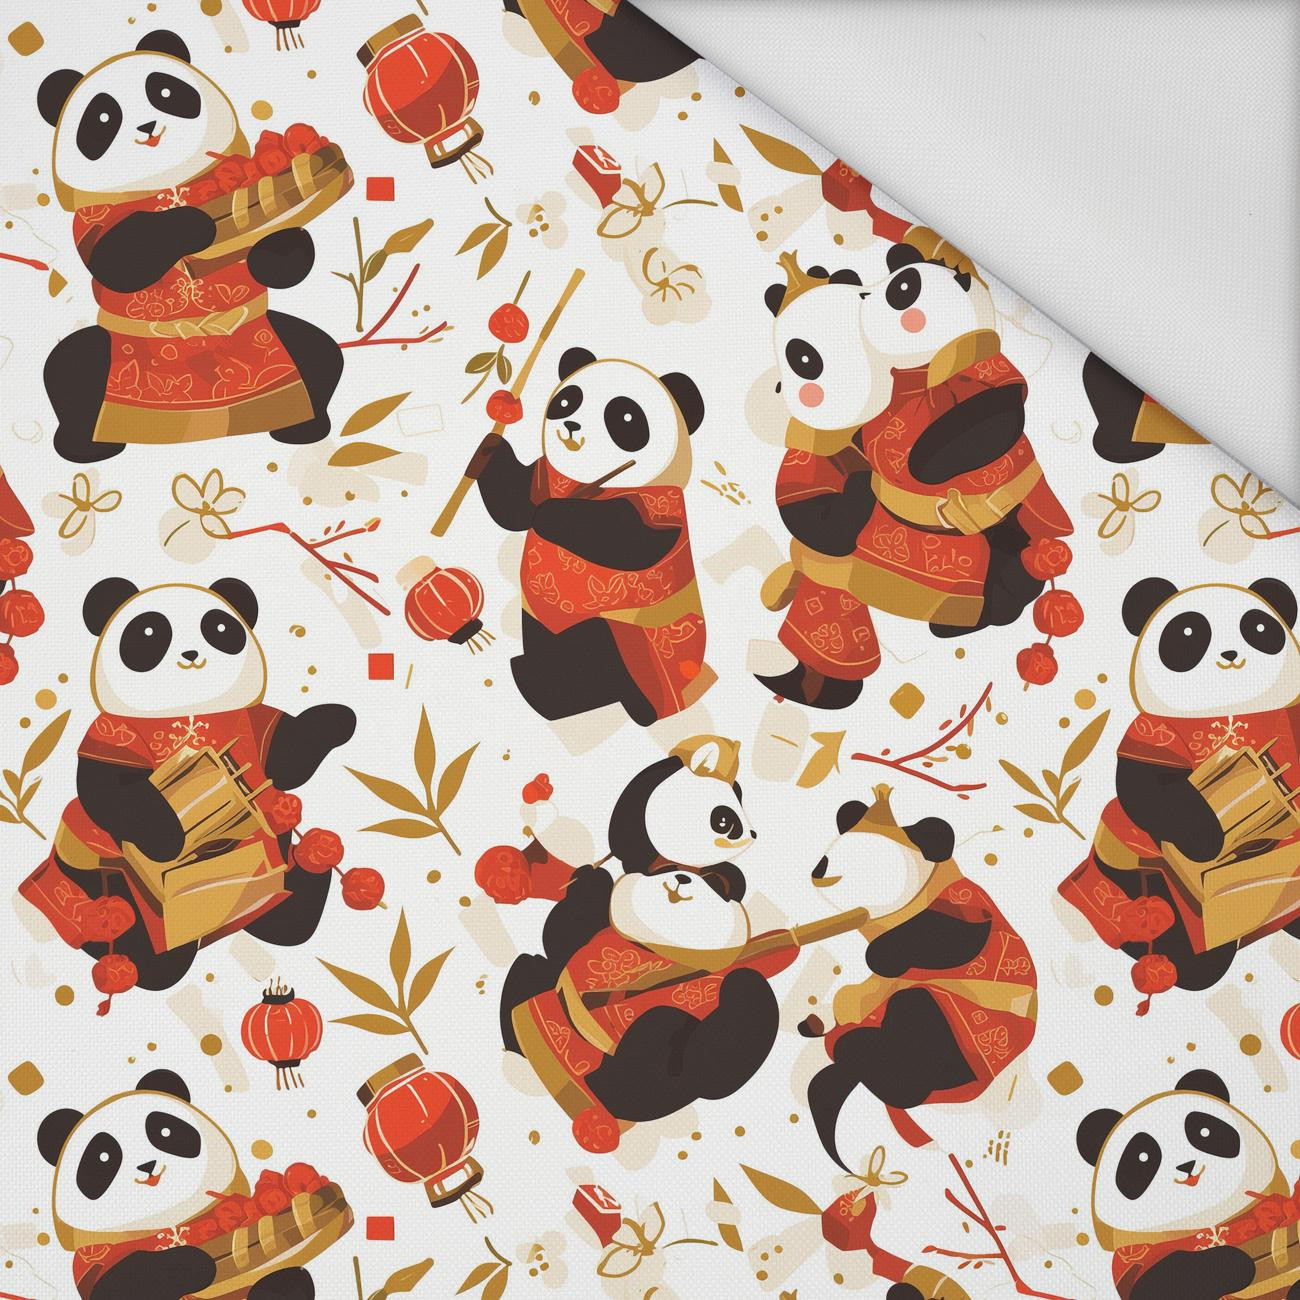 CHINESE PANDAS - Waterproof woven fabric